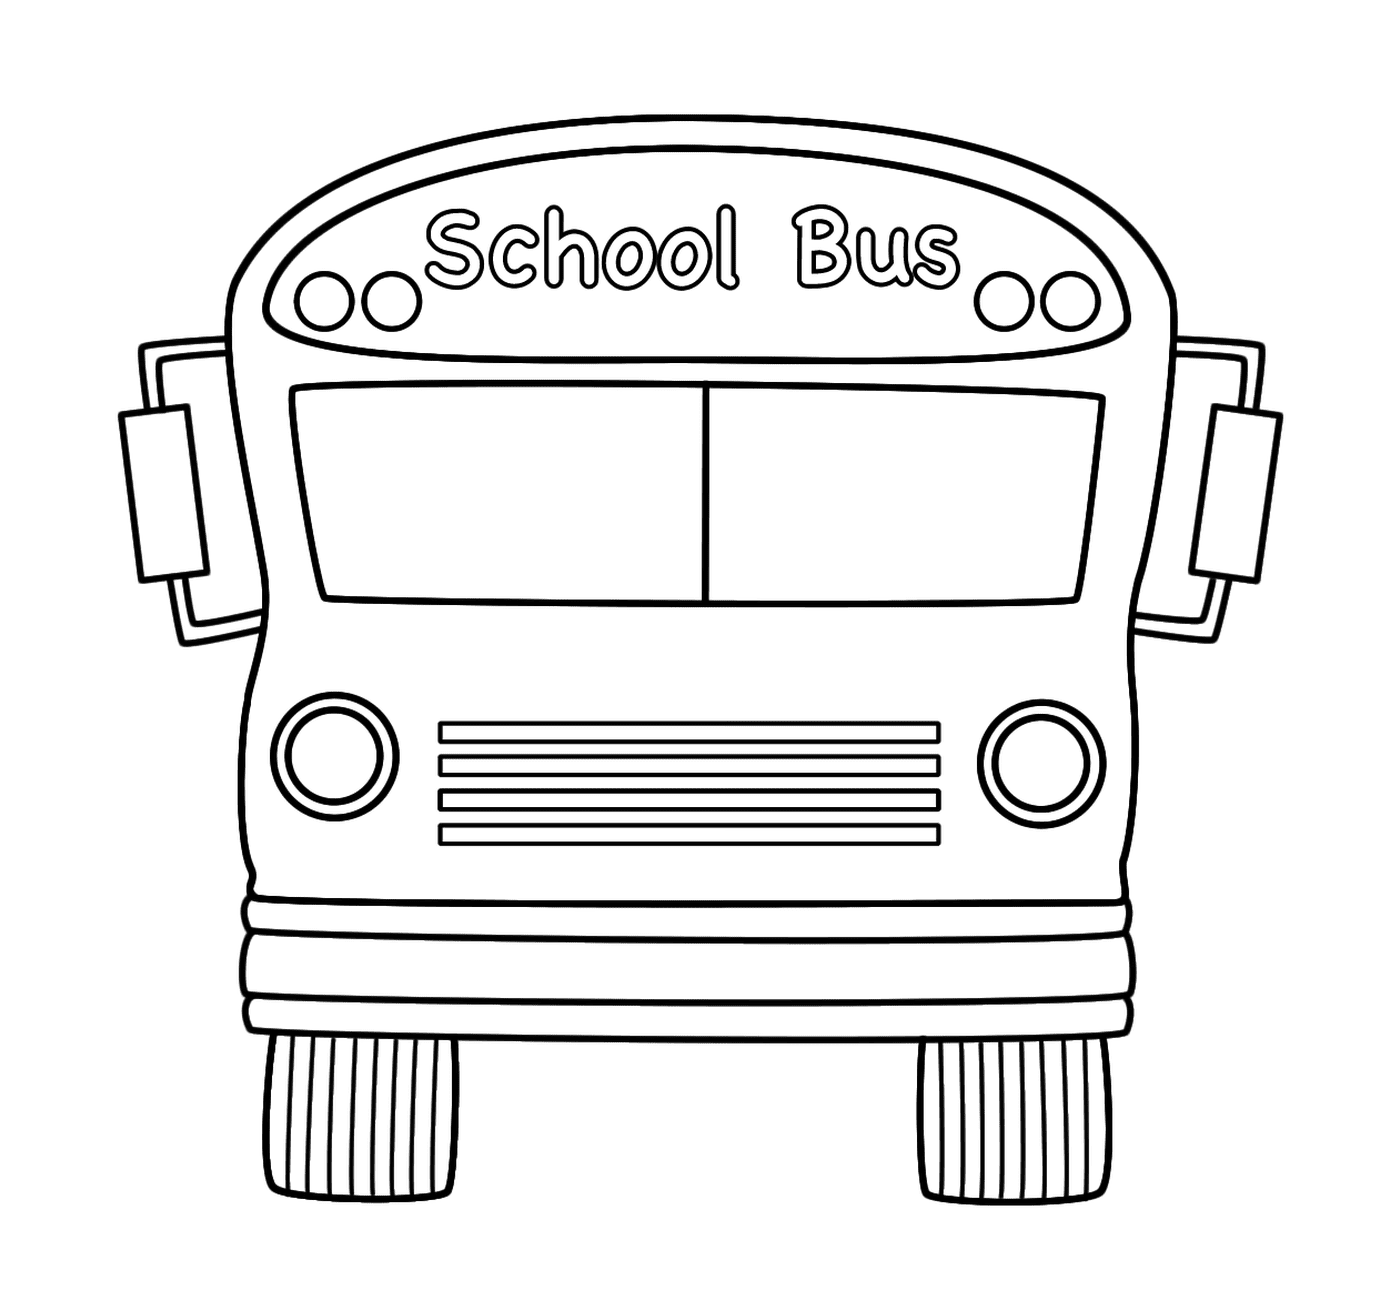  Um ônibus escolar está se preparando para sair 